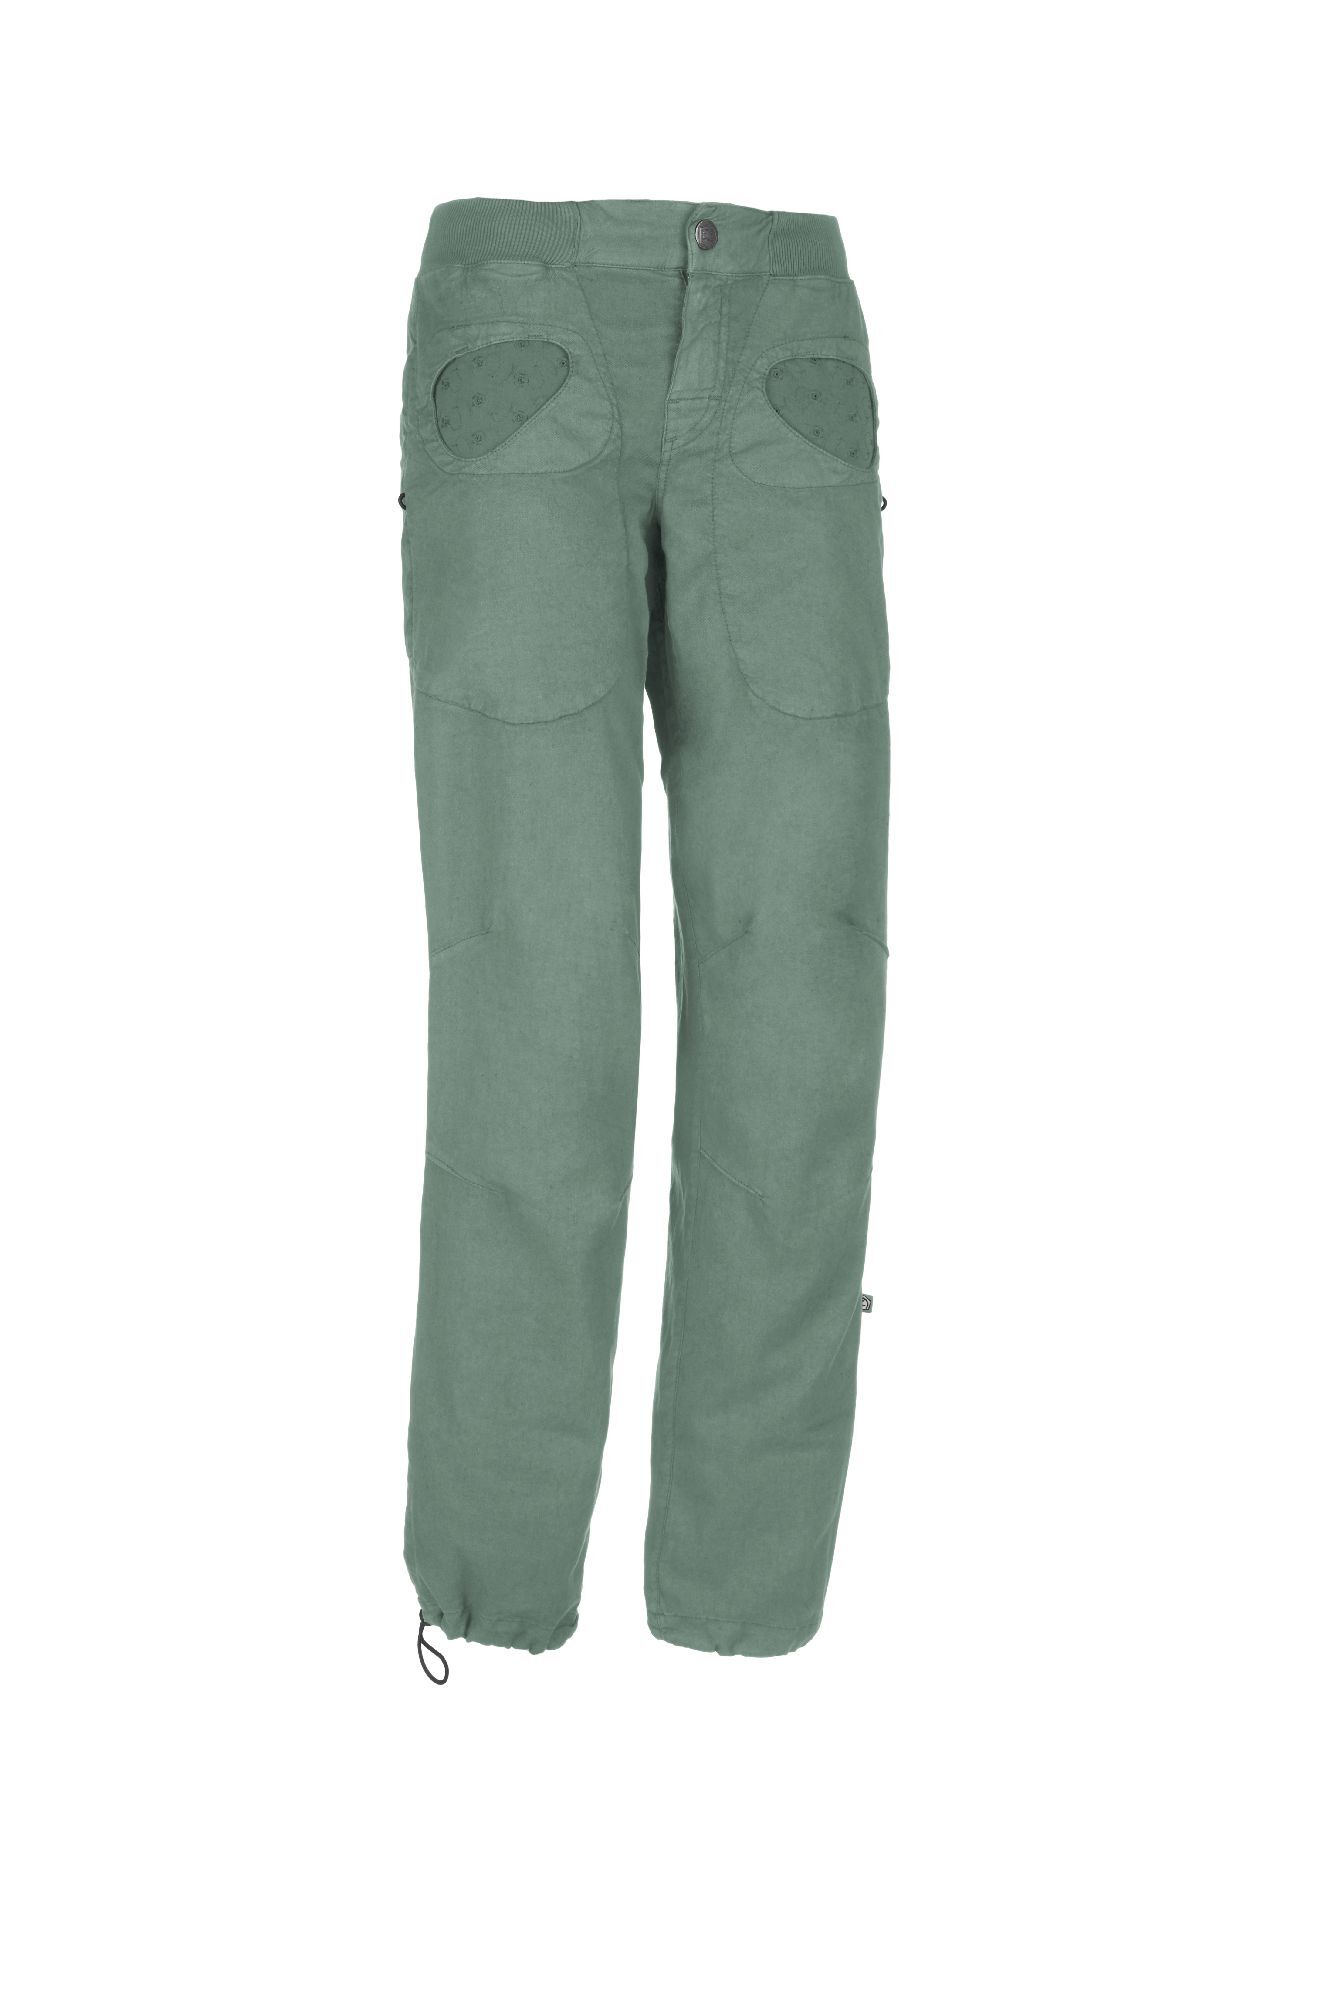 E9 Onda Flax - Climbing trousers - Women's